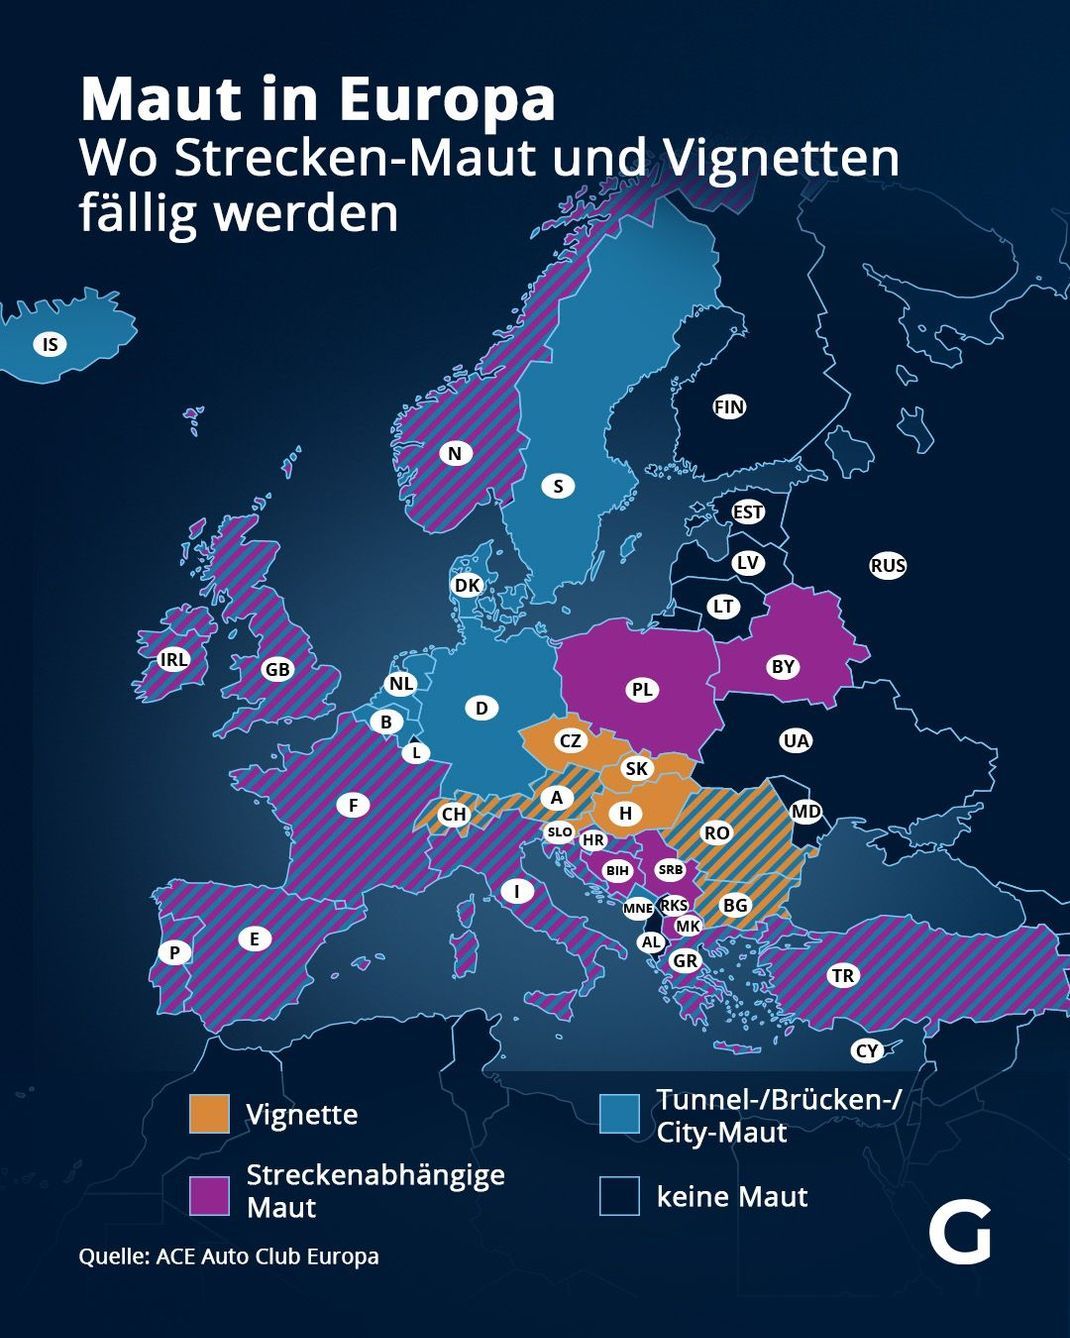 Maut in Europa - Wo Strecken-Maut und Vignetten fällig werden